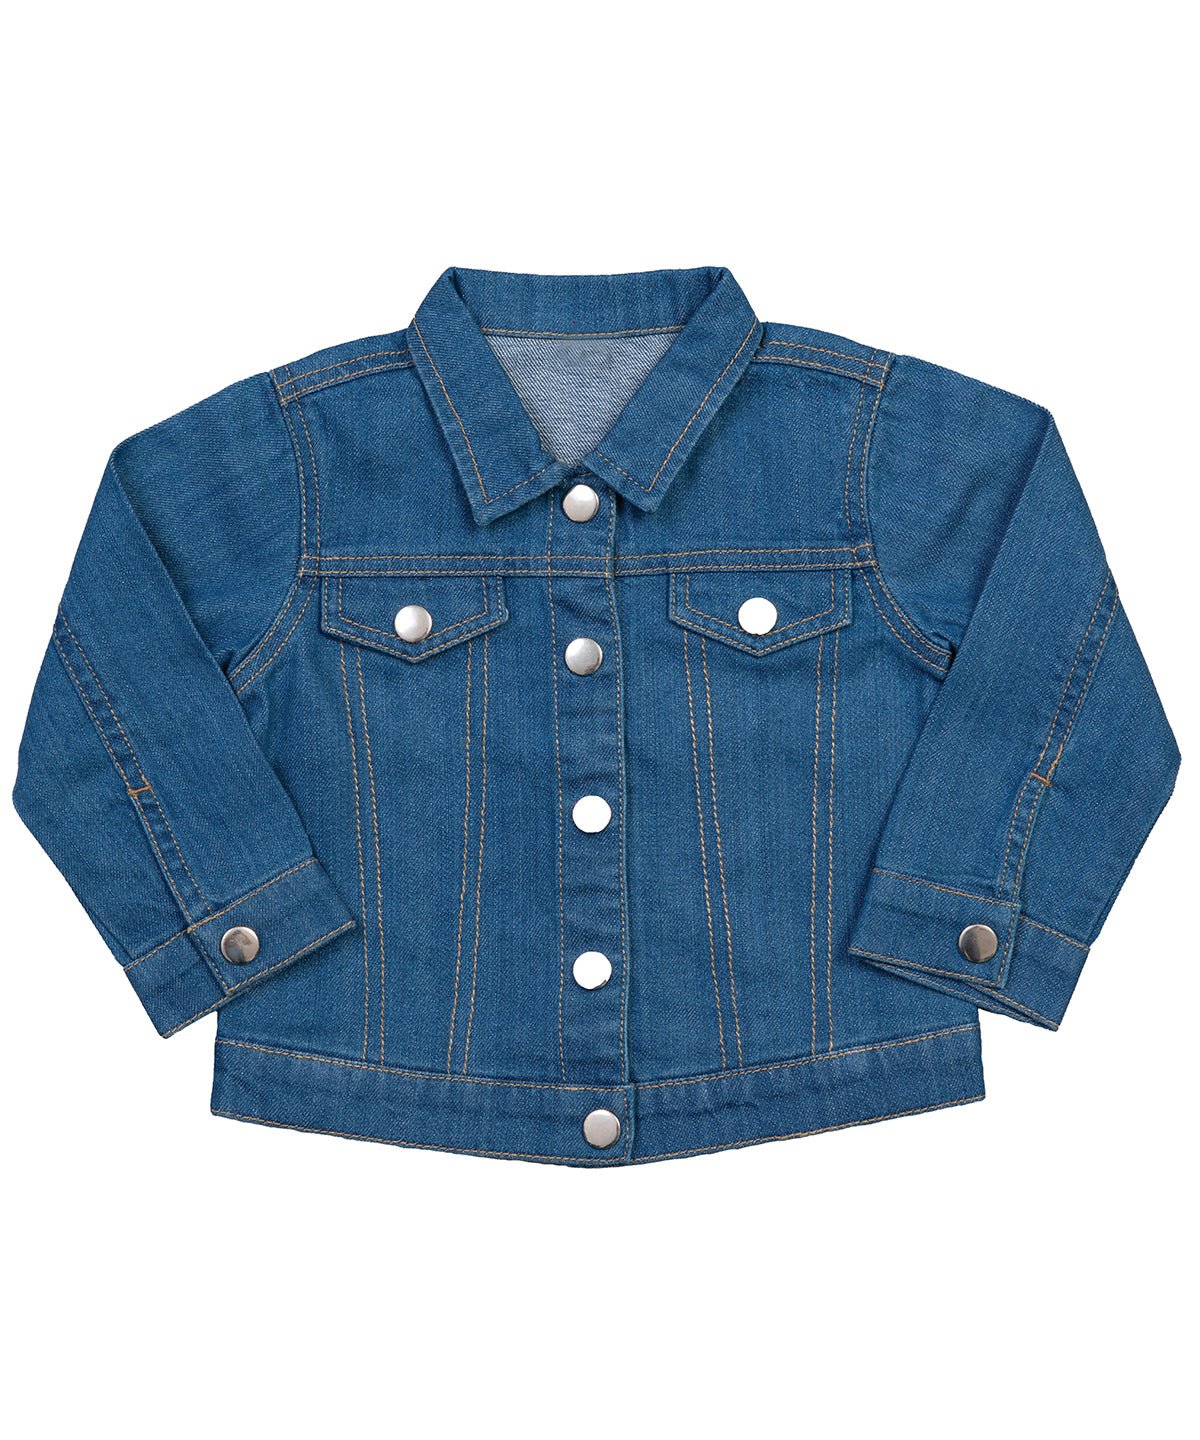 Personalised Jackets - Mid Blue Babybugz Baby Rocks denim jacket